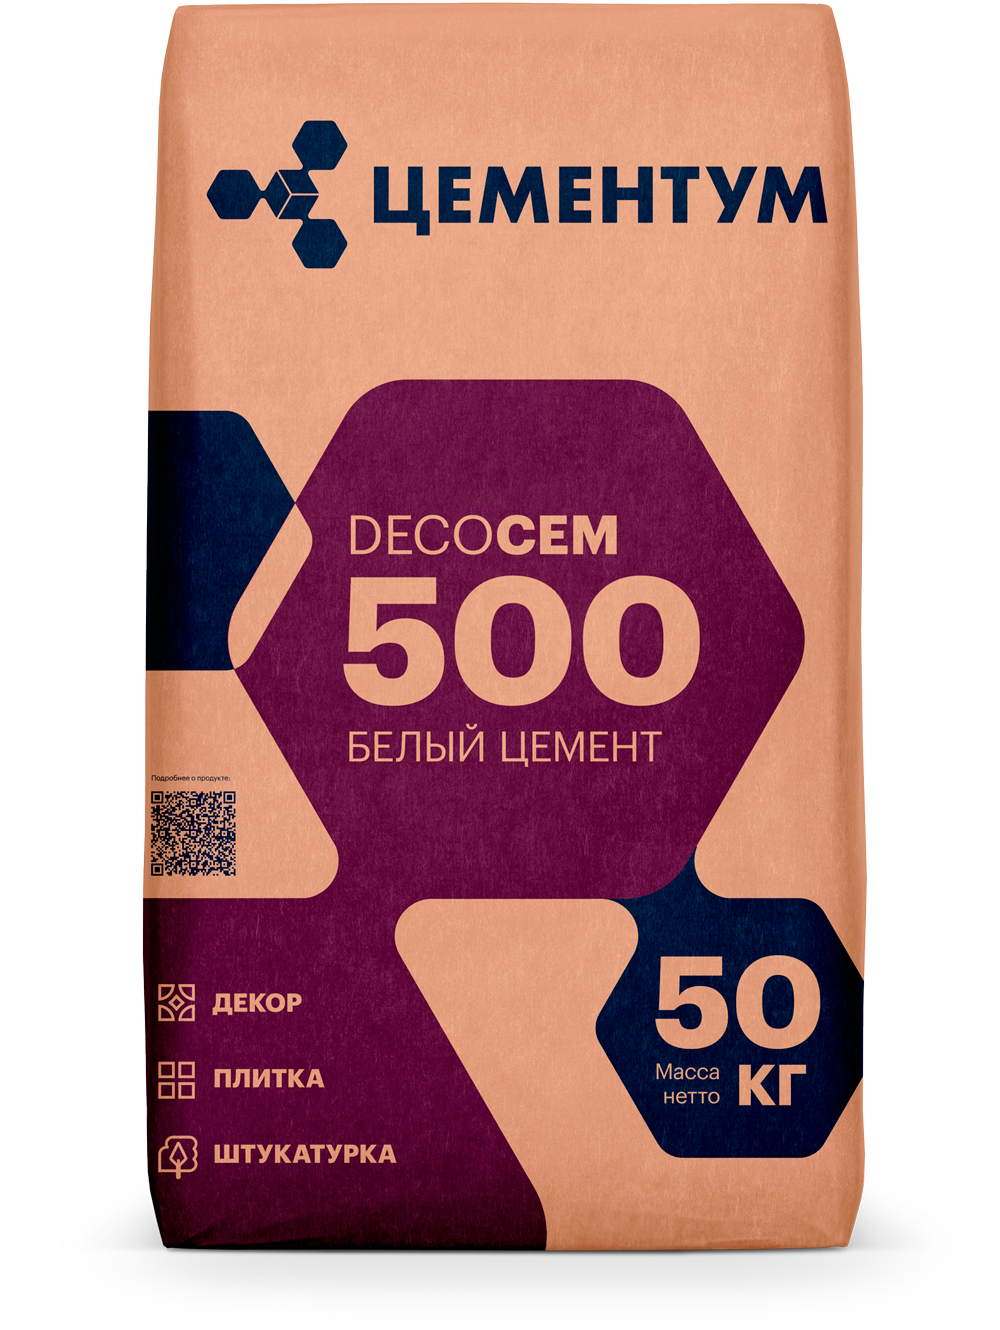 Белый-цемент-DecoCEM-500-2.png